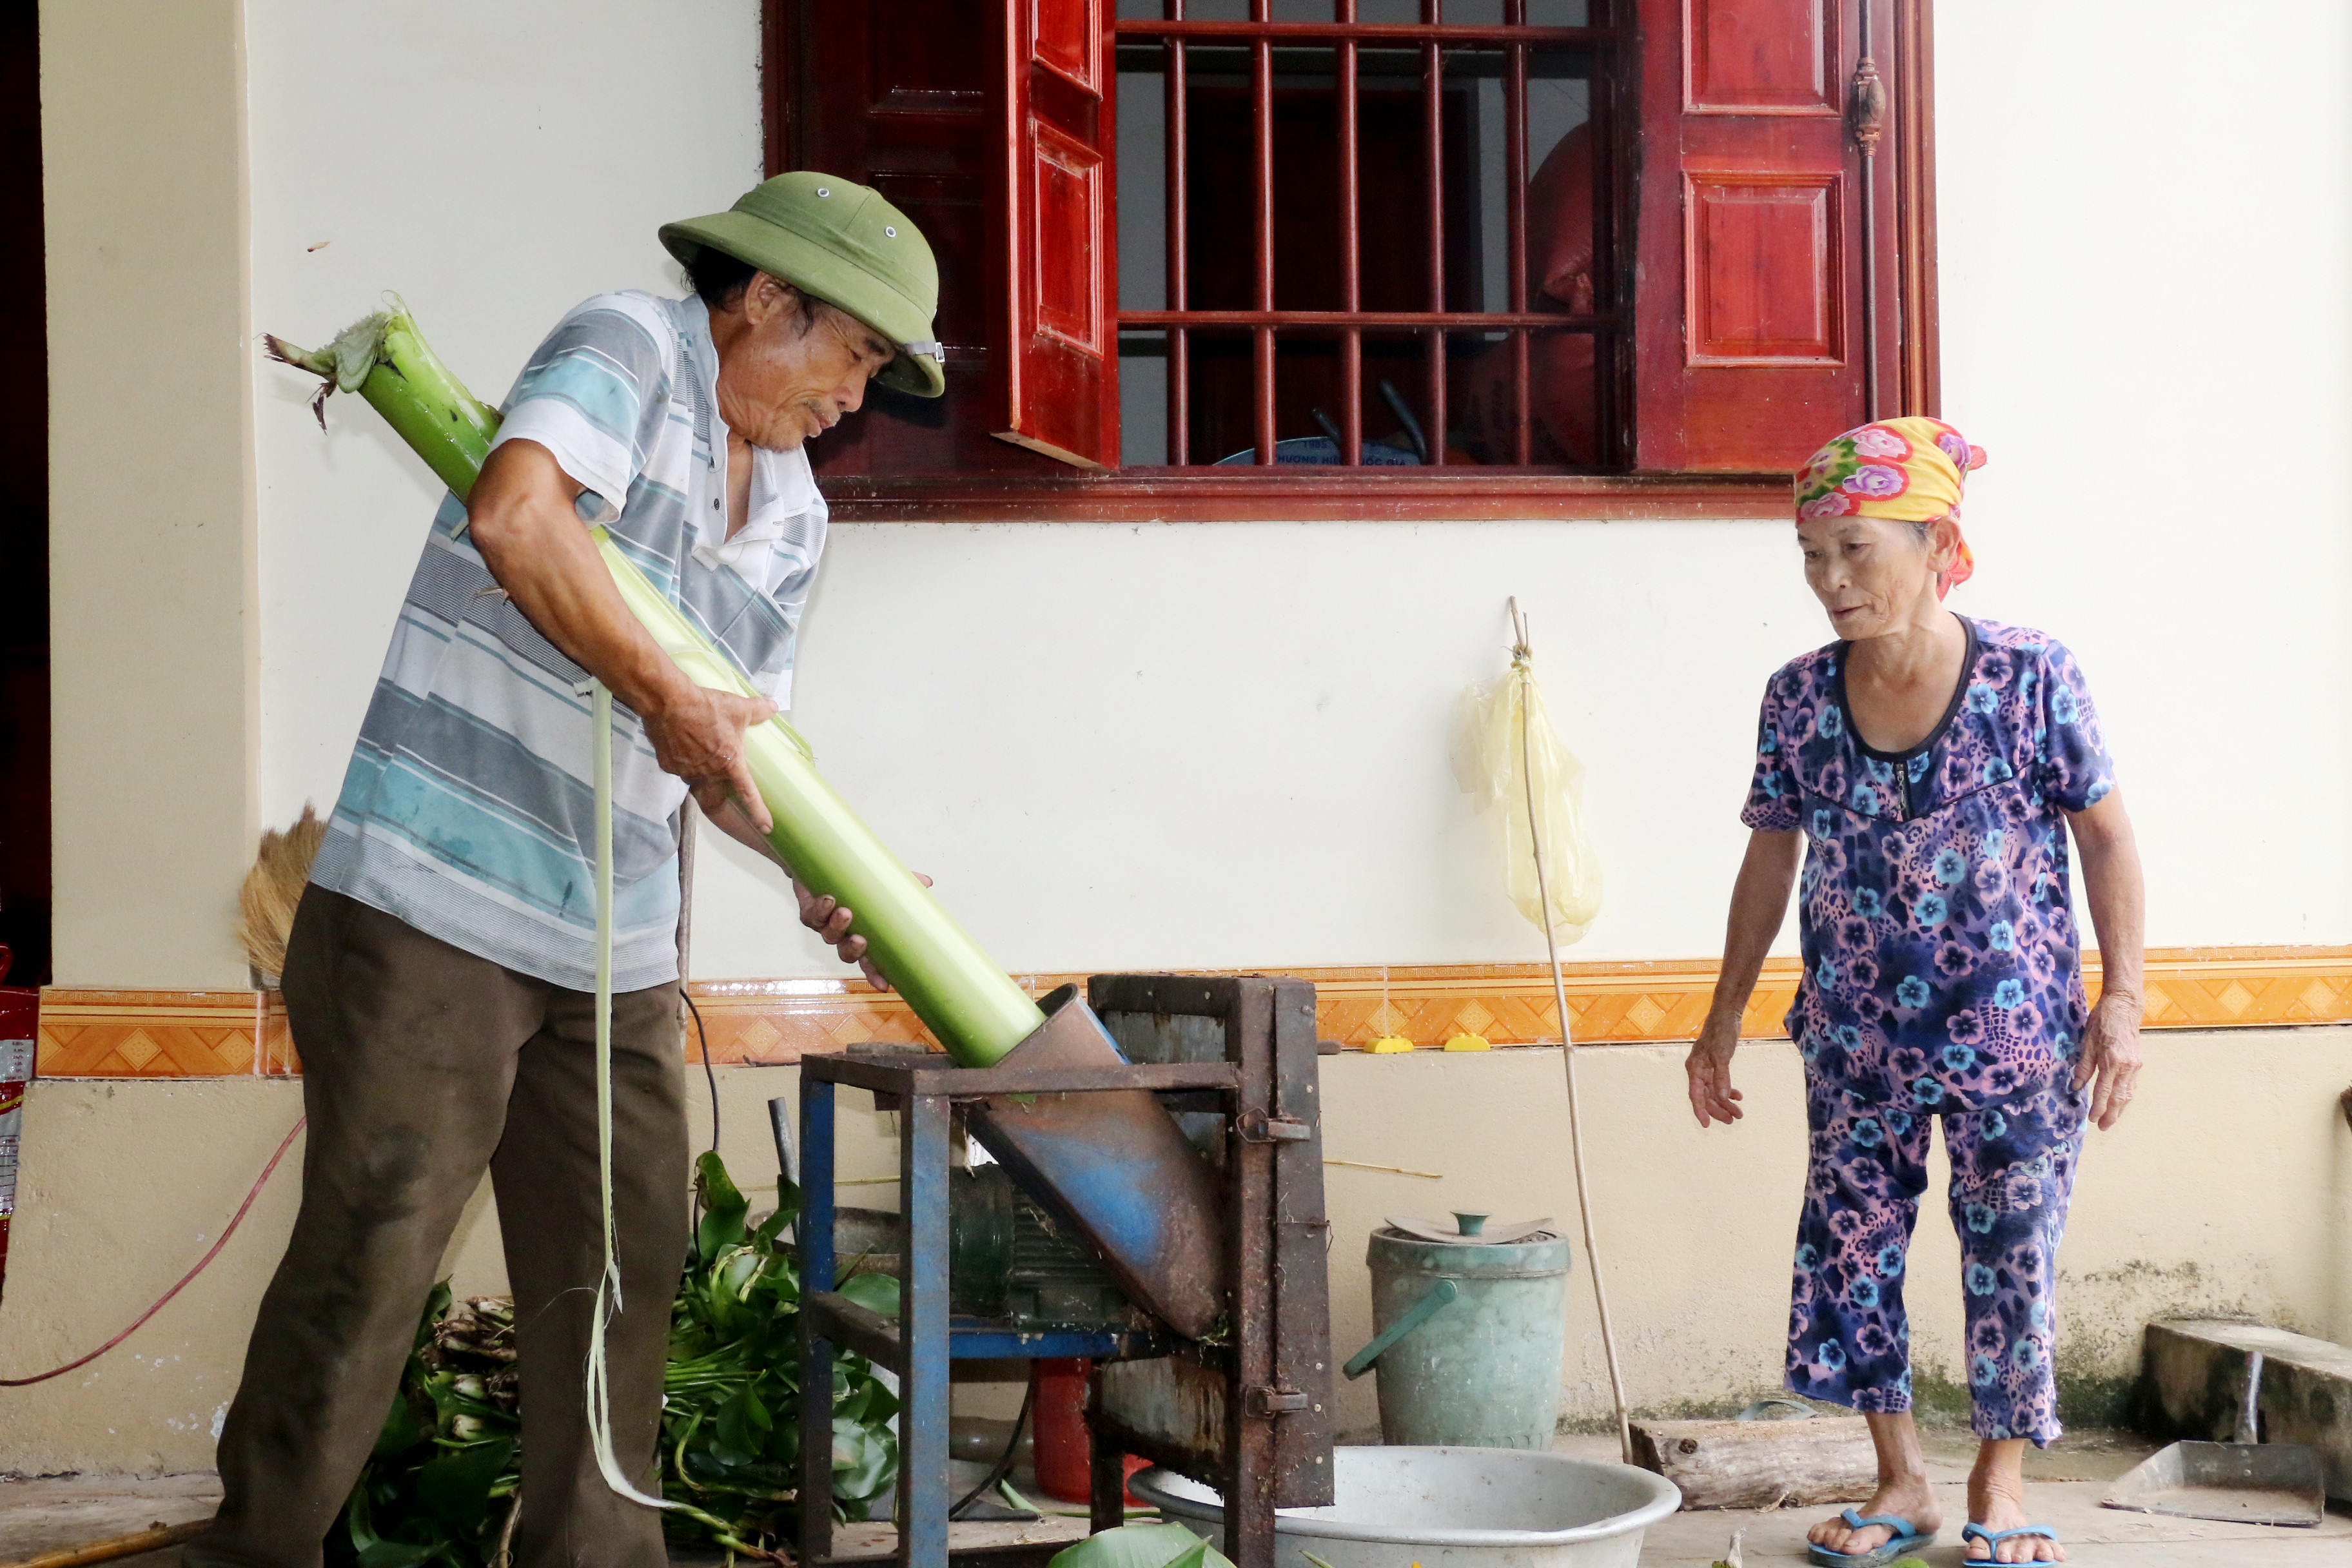 bna_Dù tuổi đã cao nhưng nhiều người già ở huyện Yên Thành vẫn phải tiếp tục lao động.jpg